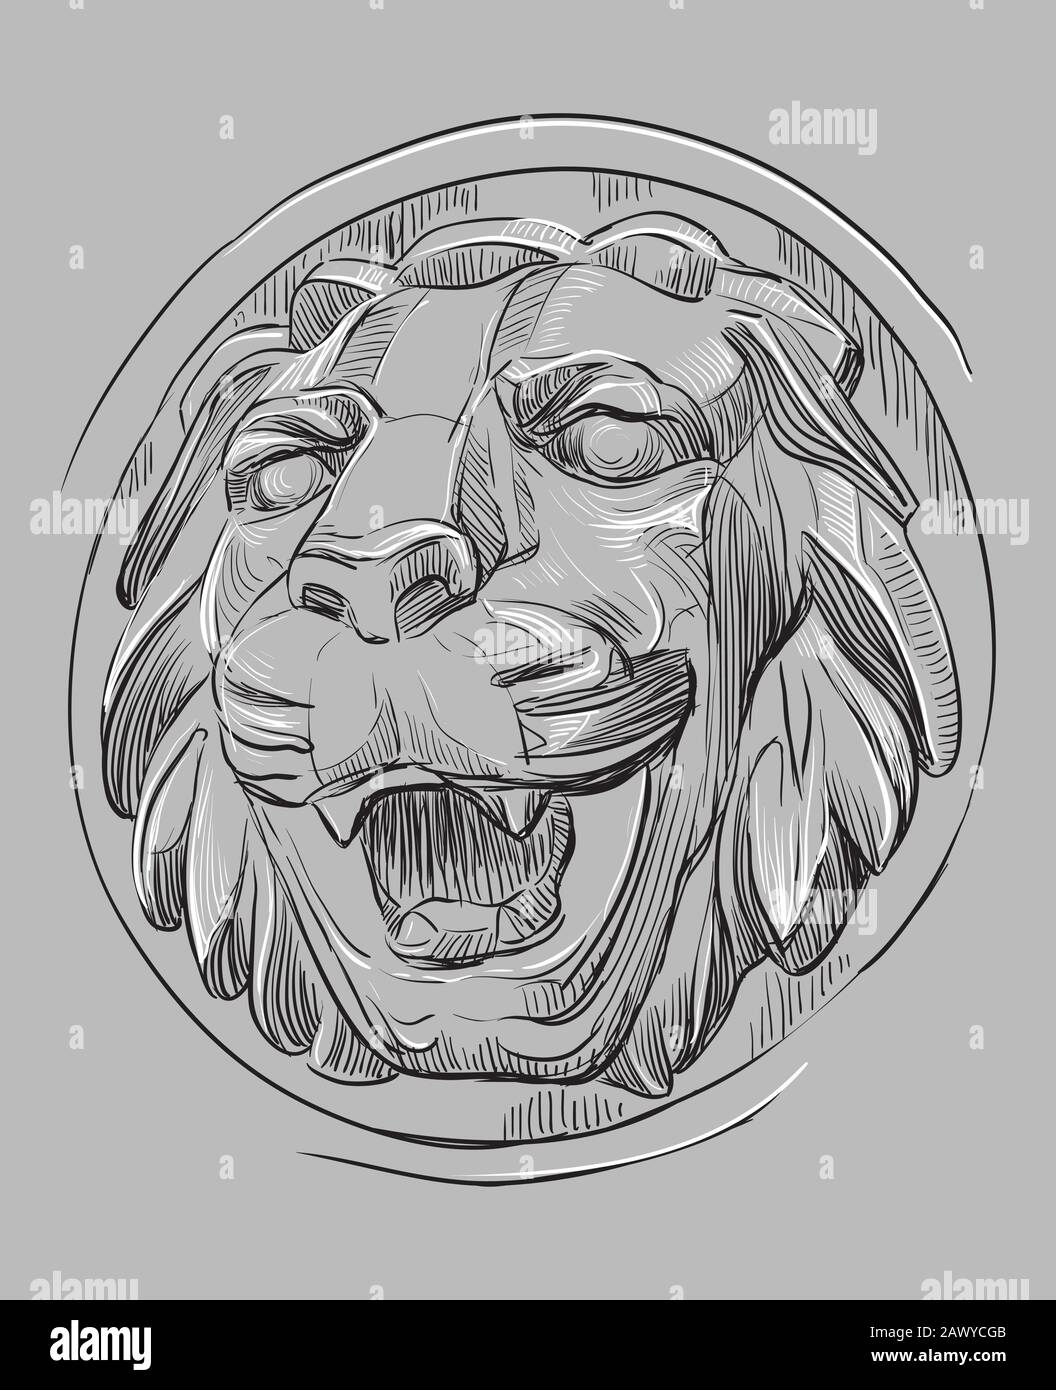 Pierre ancienne bas-relief sous la forme d'une tête de lion à bouche ouverte, illustration de dessin vectoriel à la main dans les couleurs noir et blanc isolées sur le bac gris Illustration de Vecteur